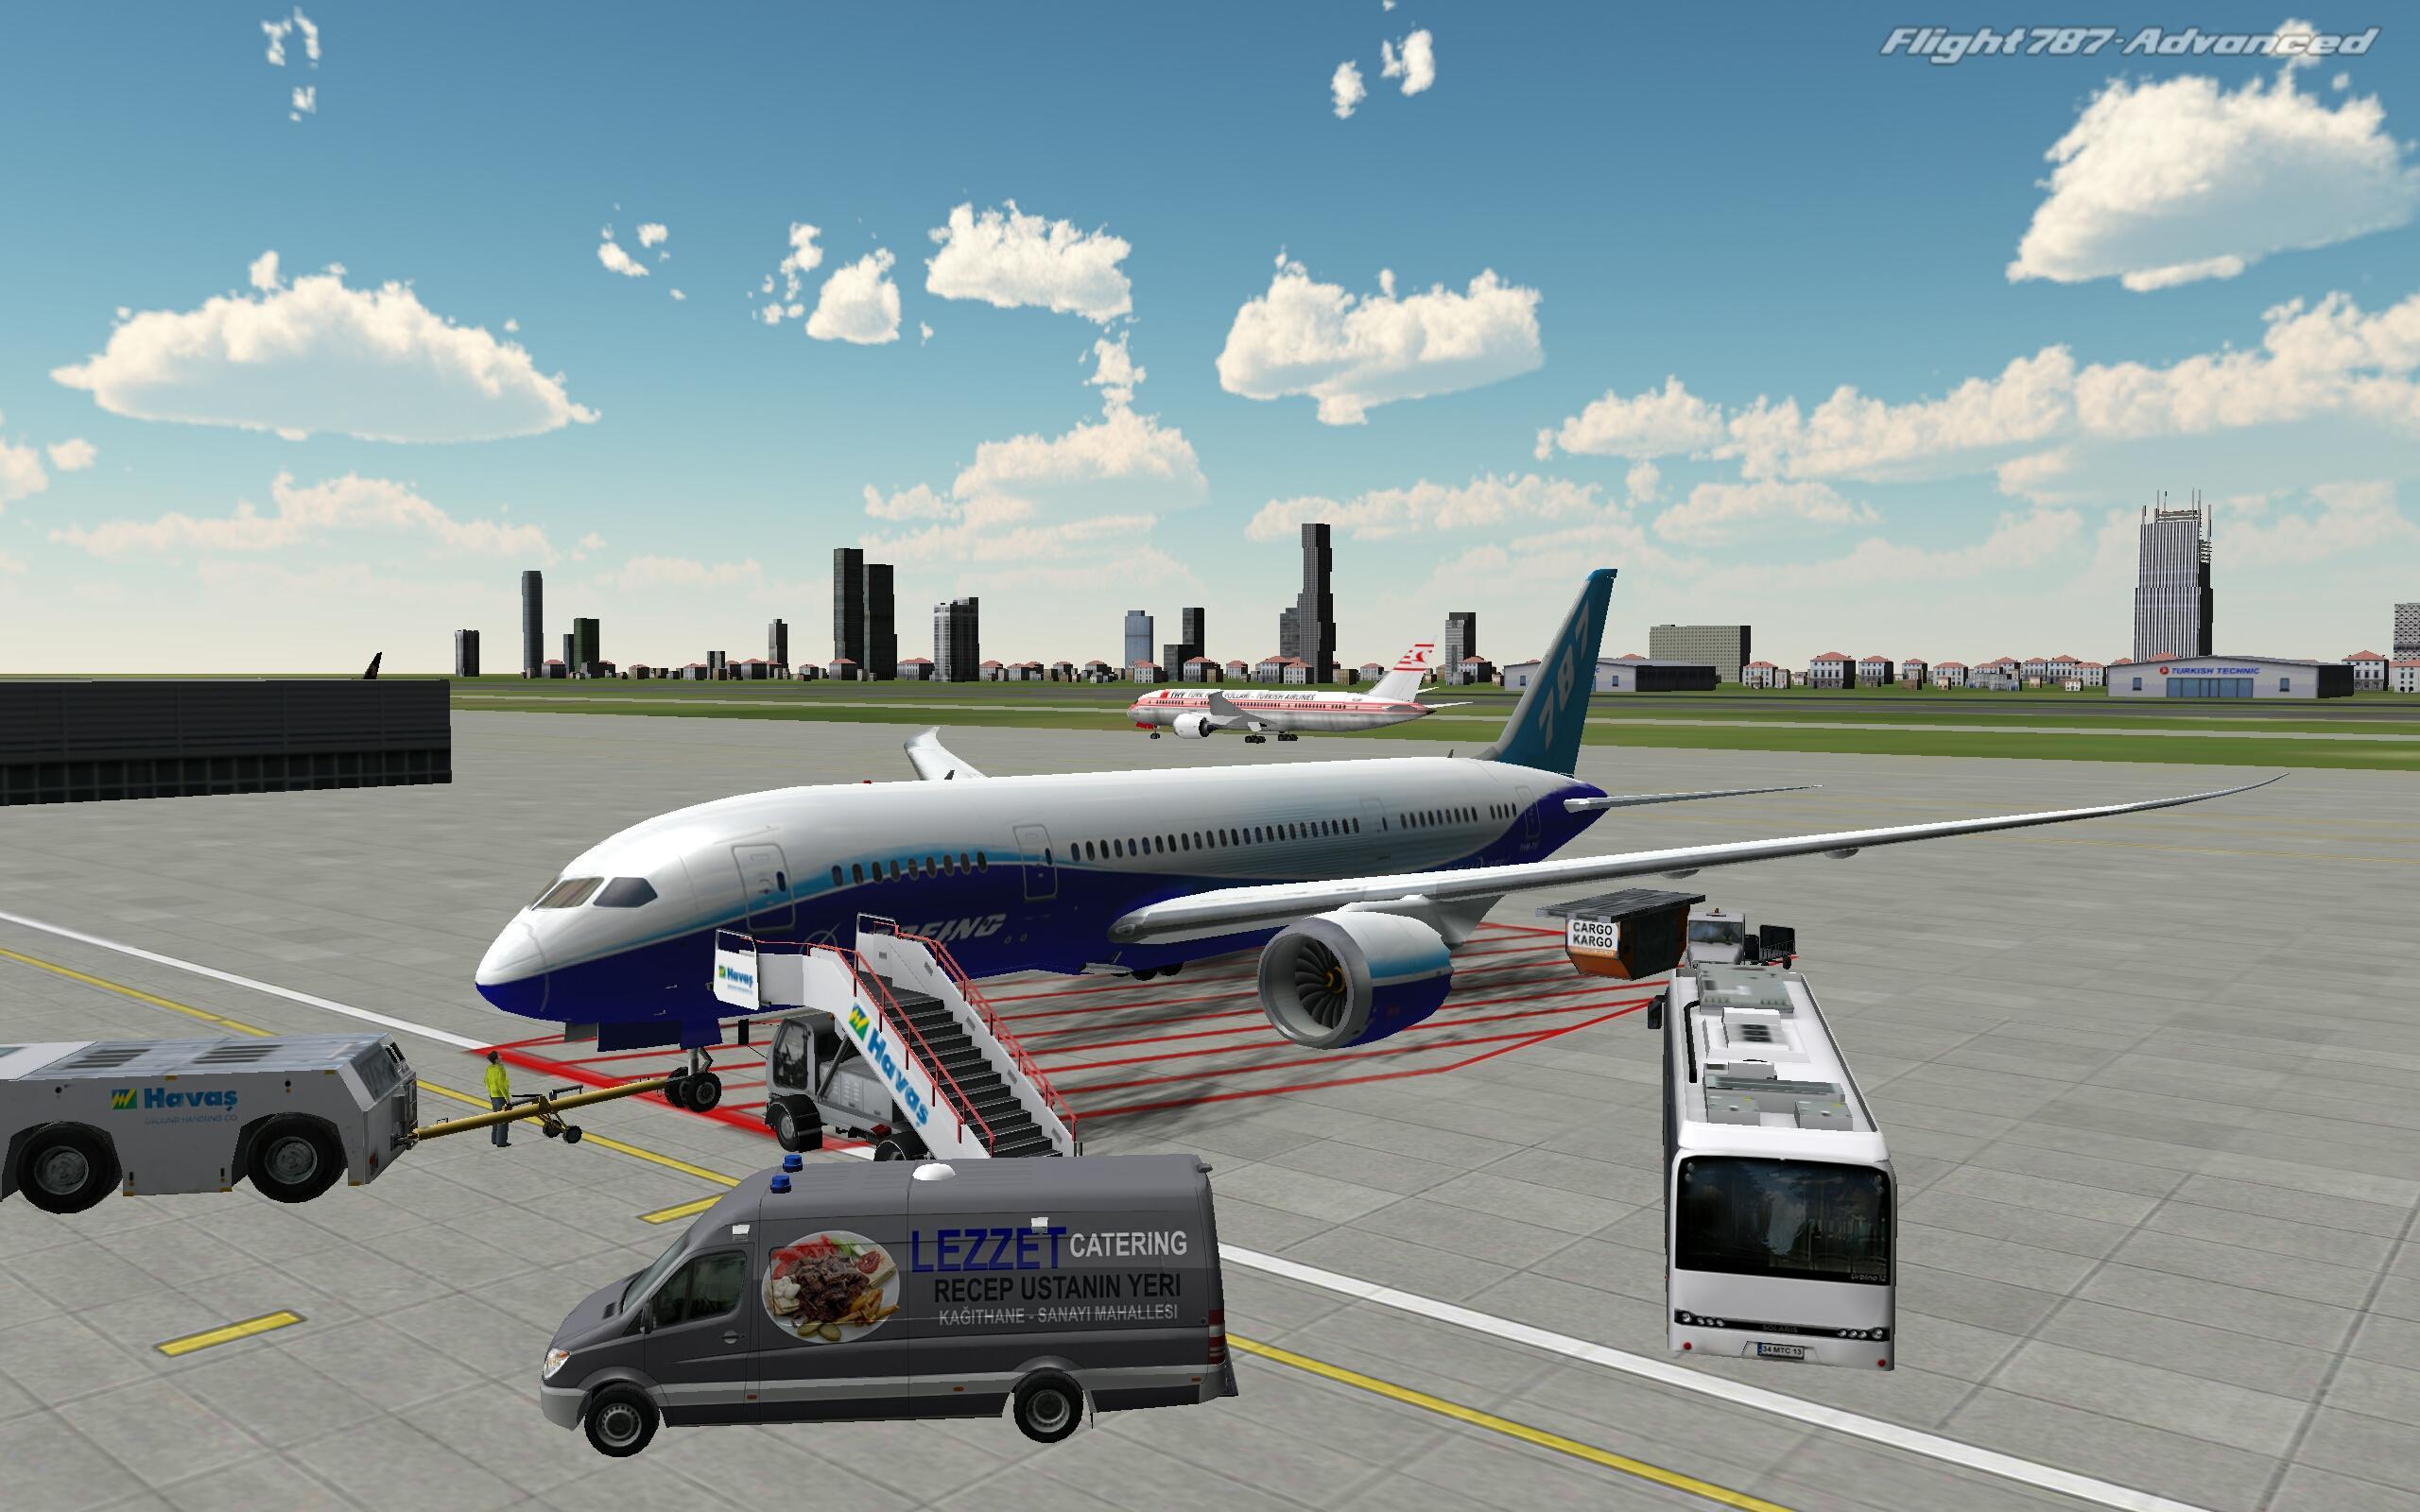 Компьютерные игры самолетов. Flight 787 - Advanced. Реал Флайт симулятор. Авиасимулятор ВДНХ. Симулятор самолета пассажирского.